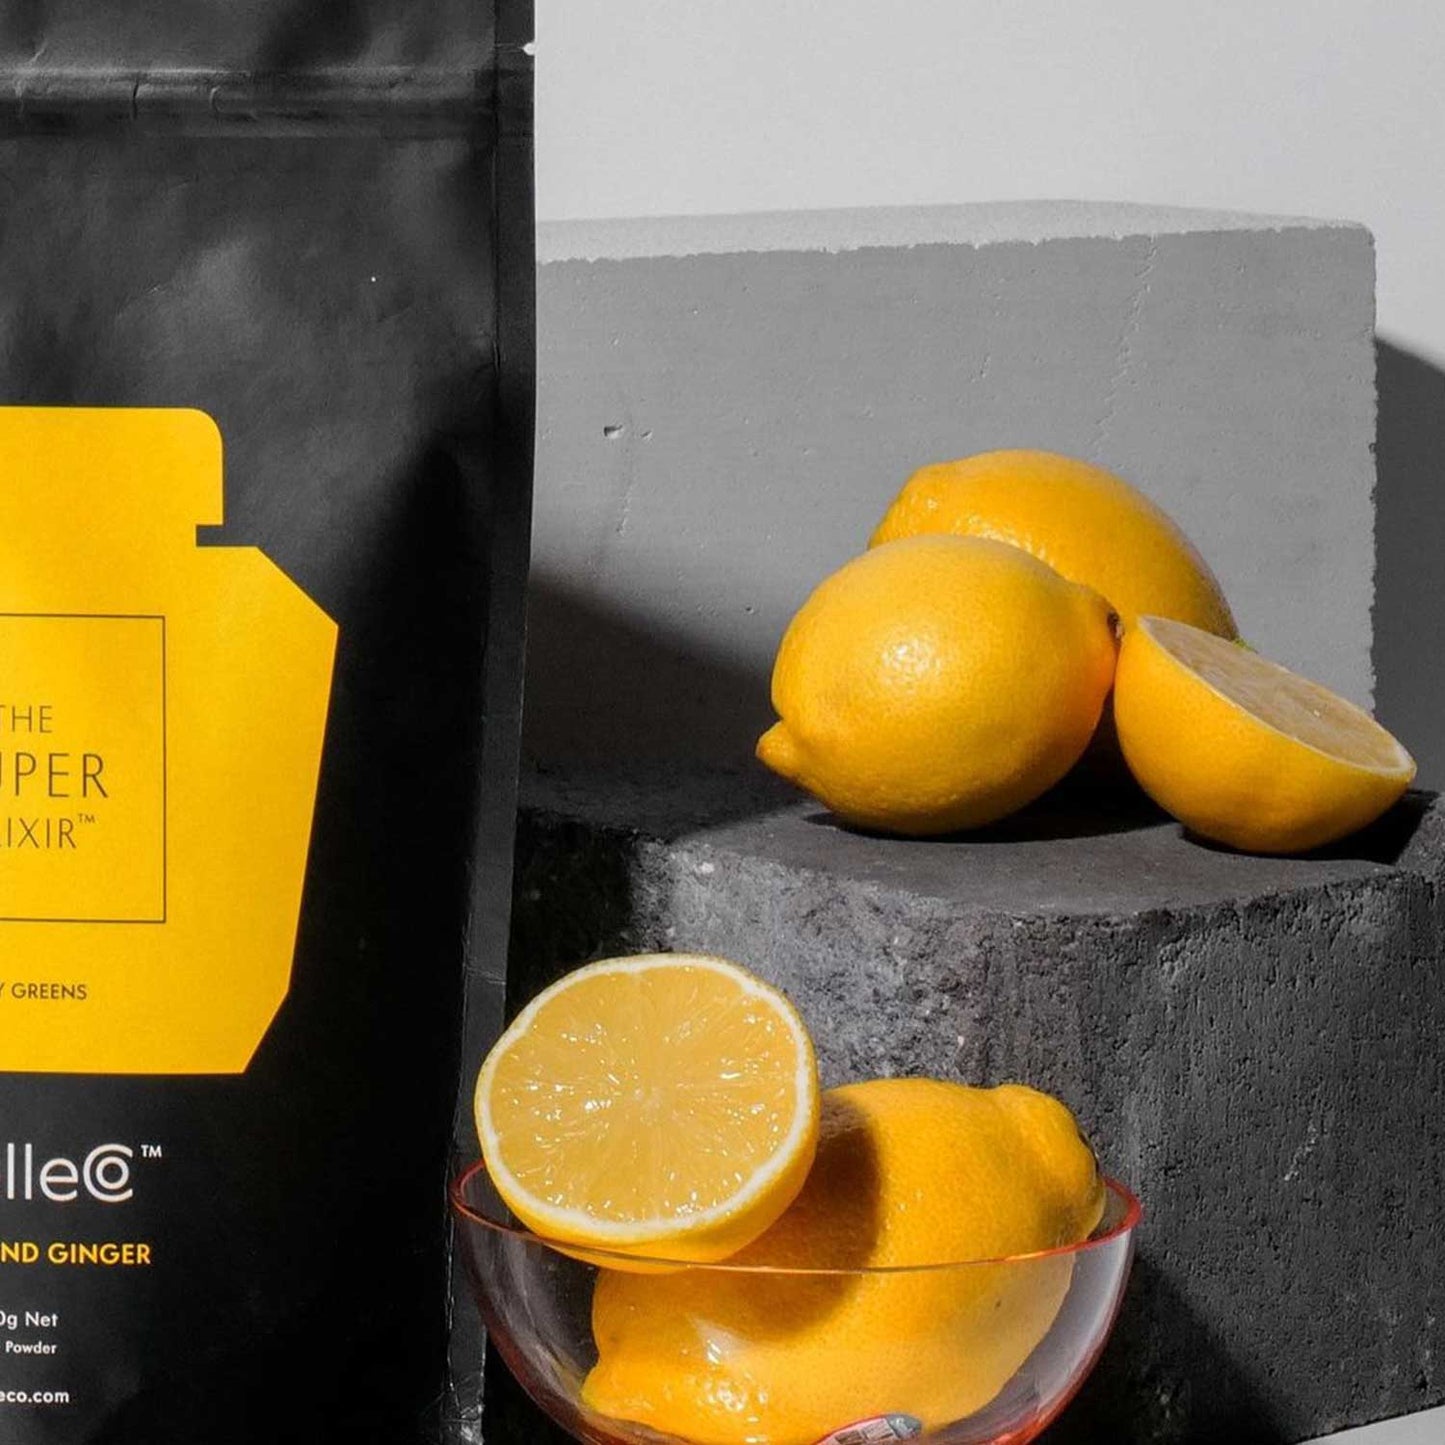 The Super Elixir Lemon & Ginger 300g Refill